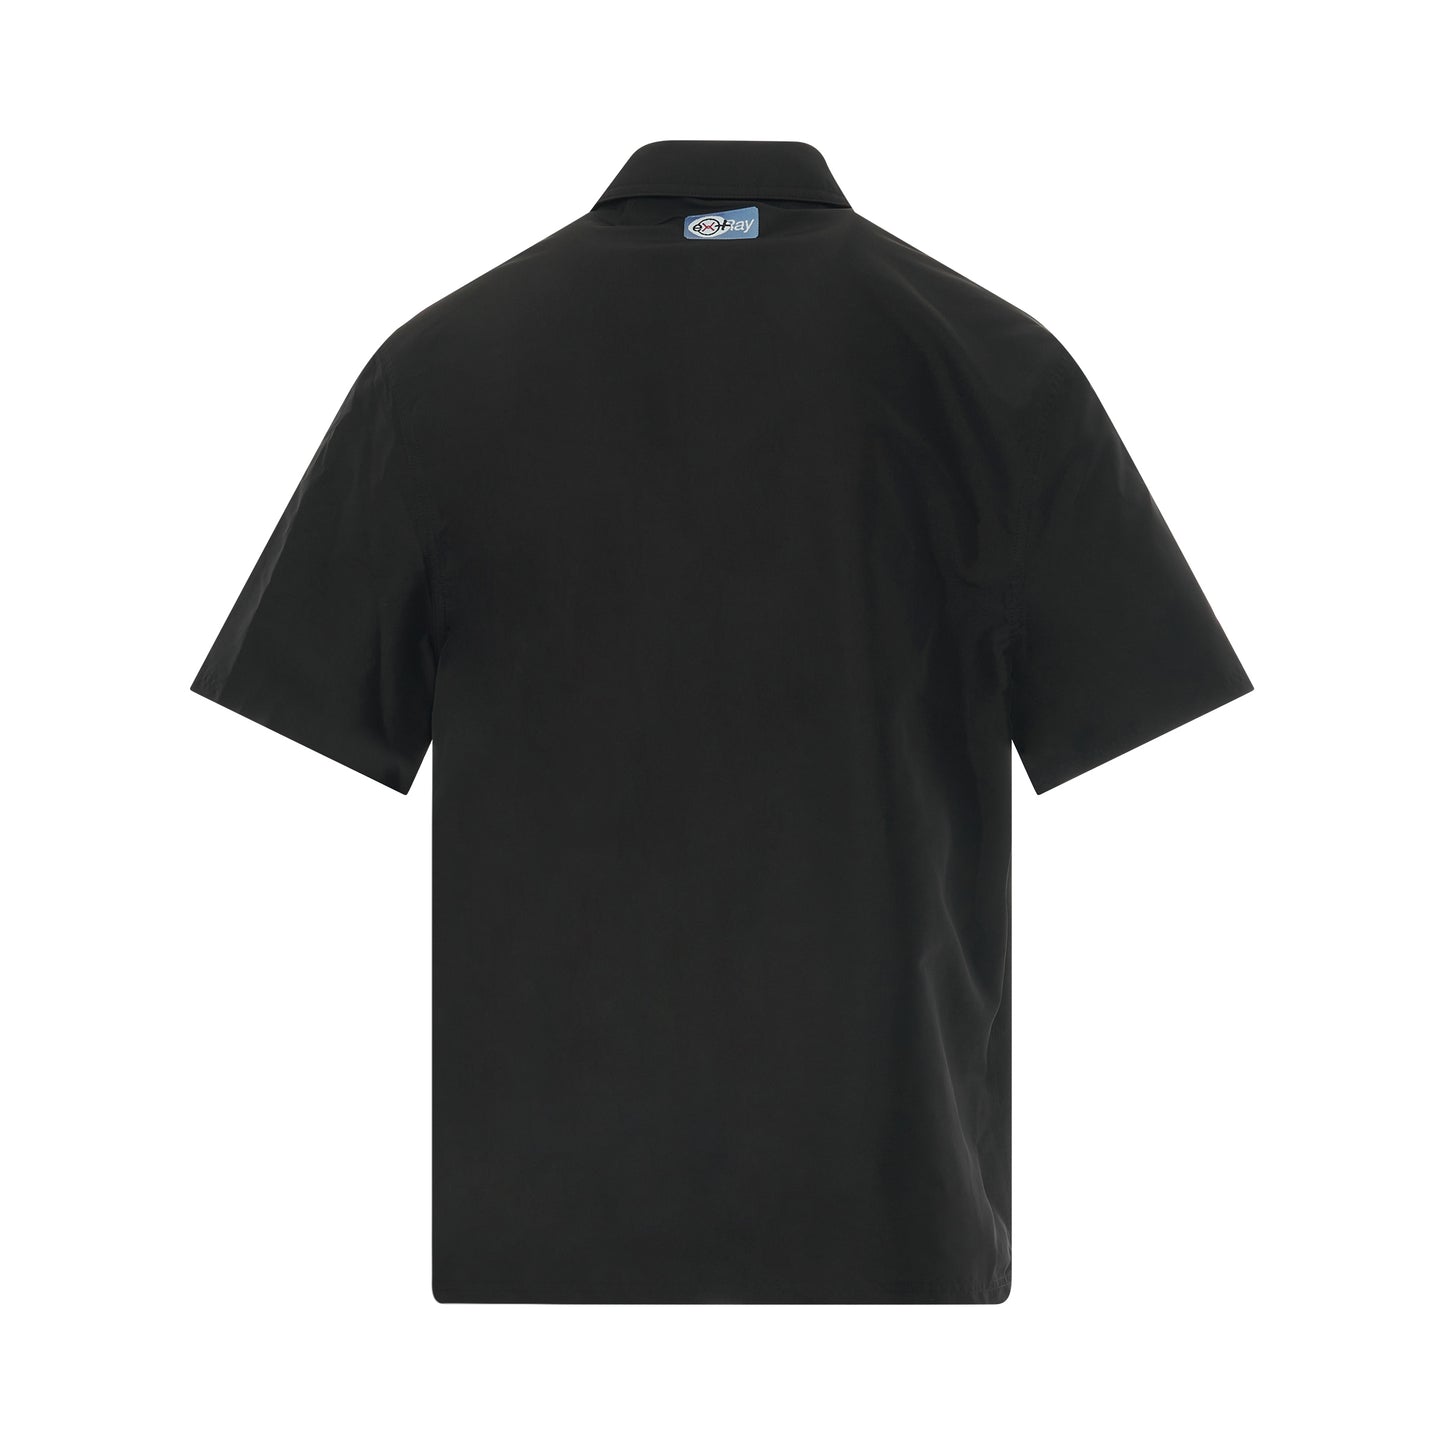 Ex-Ray Half Zip Nylon T-Shirt in Black